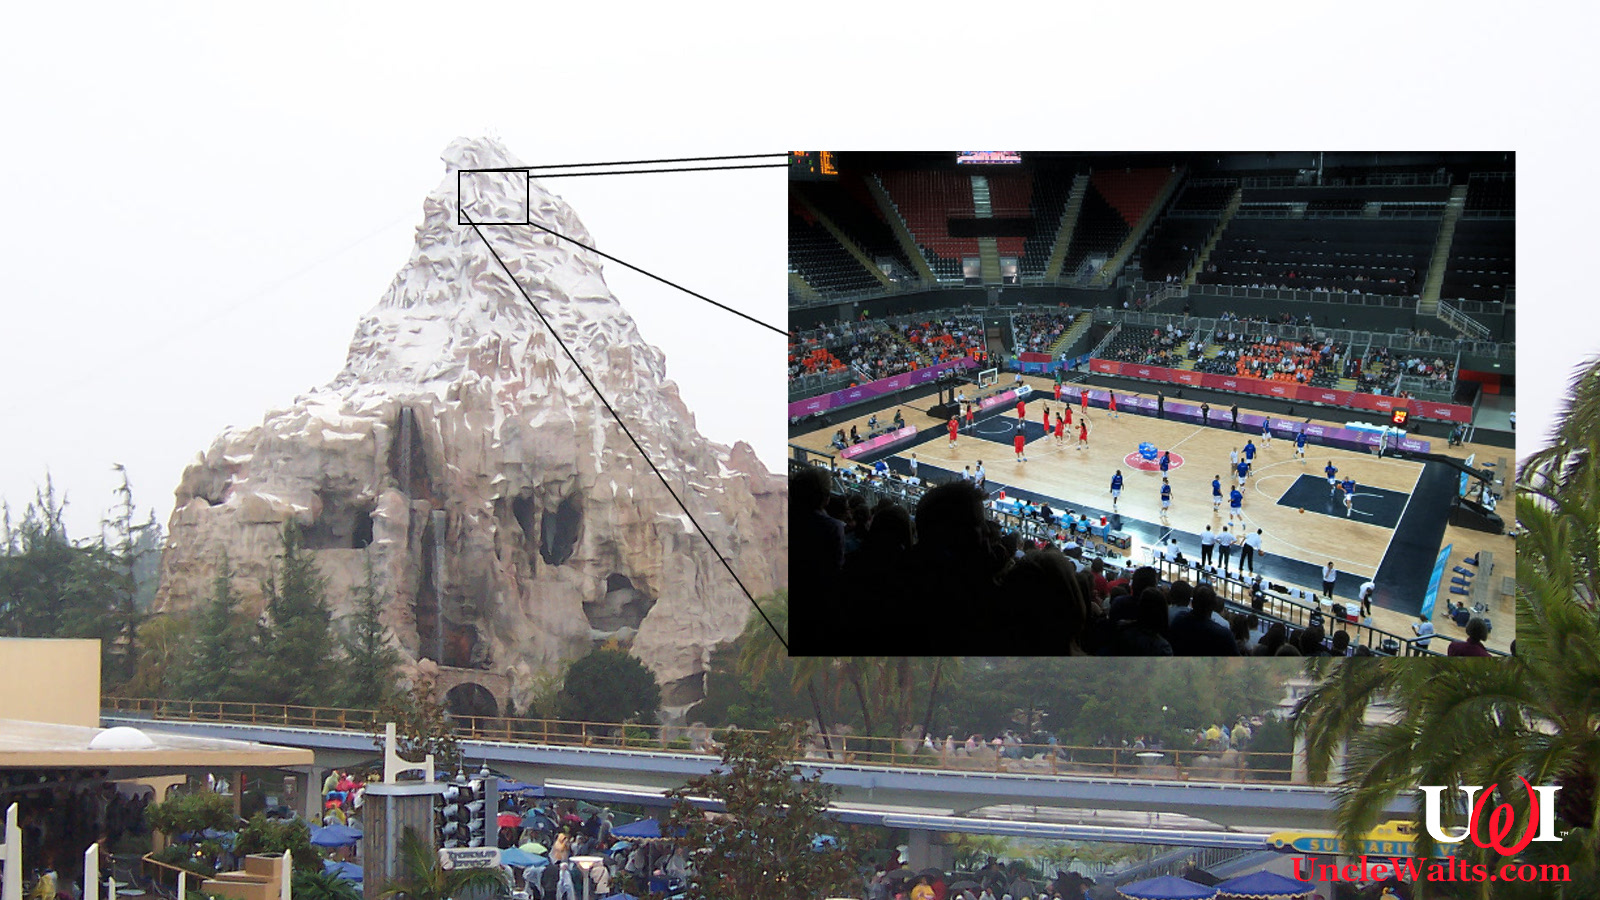 A REAL look at the Matterhorn basketball court